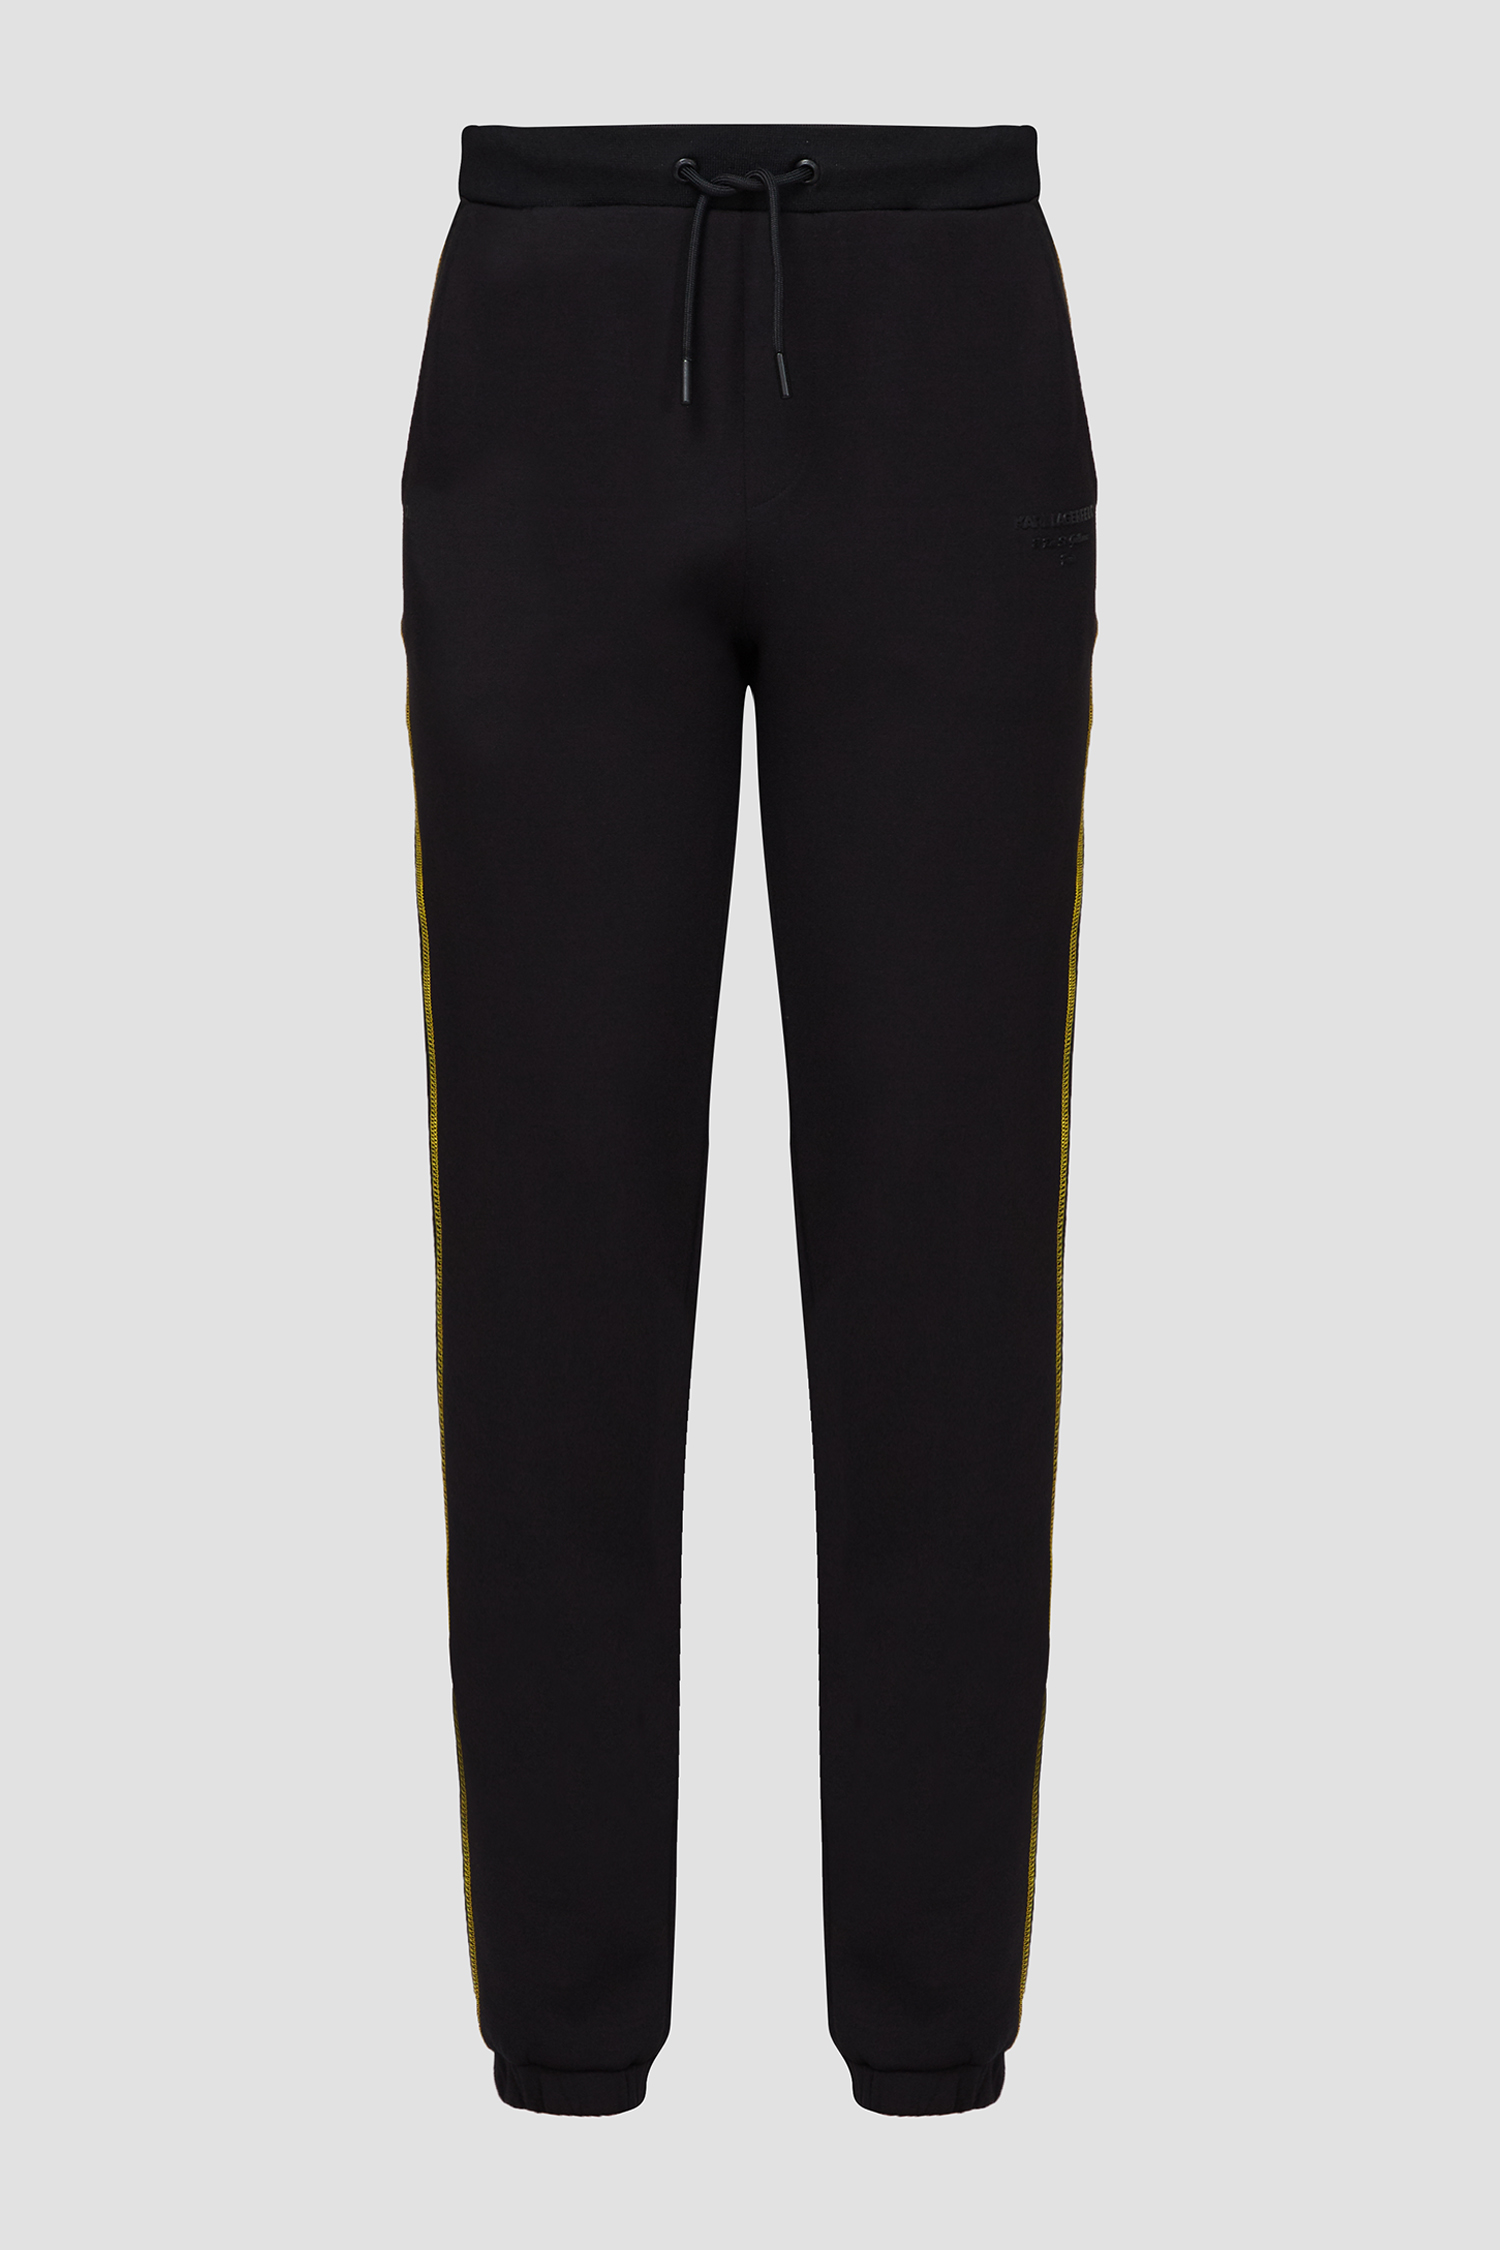 Мужские черные спортивные брюки Karl Lagerfeld 532902.705014;130